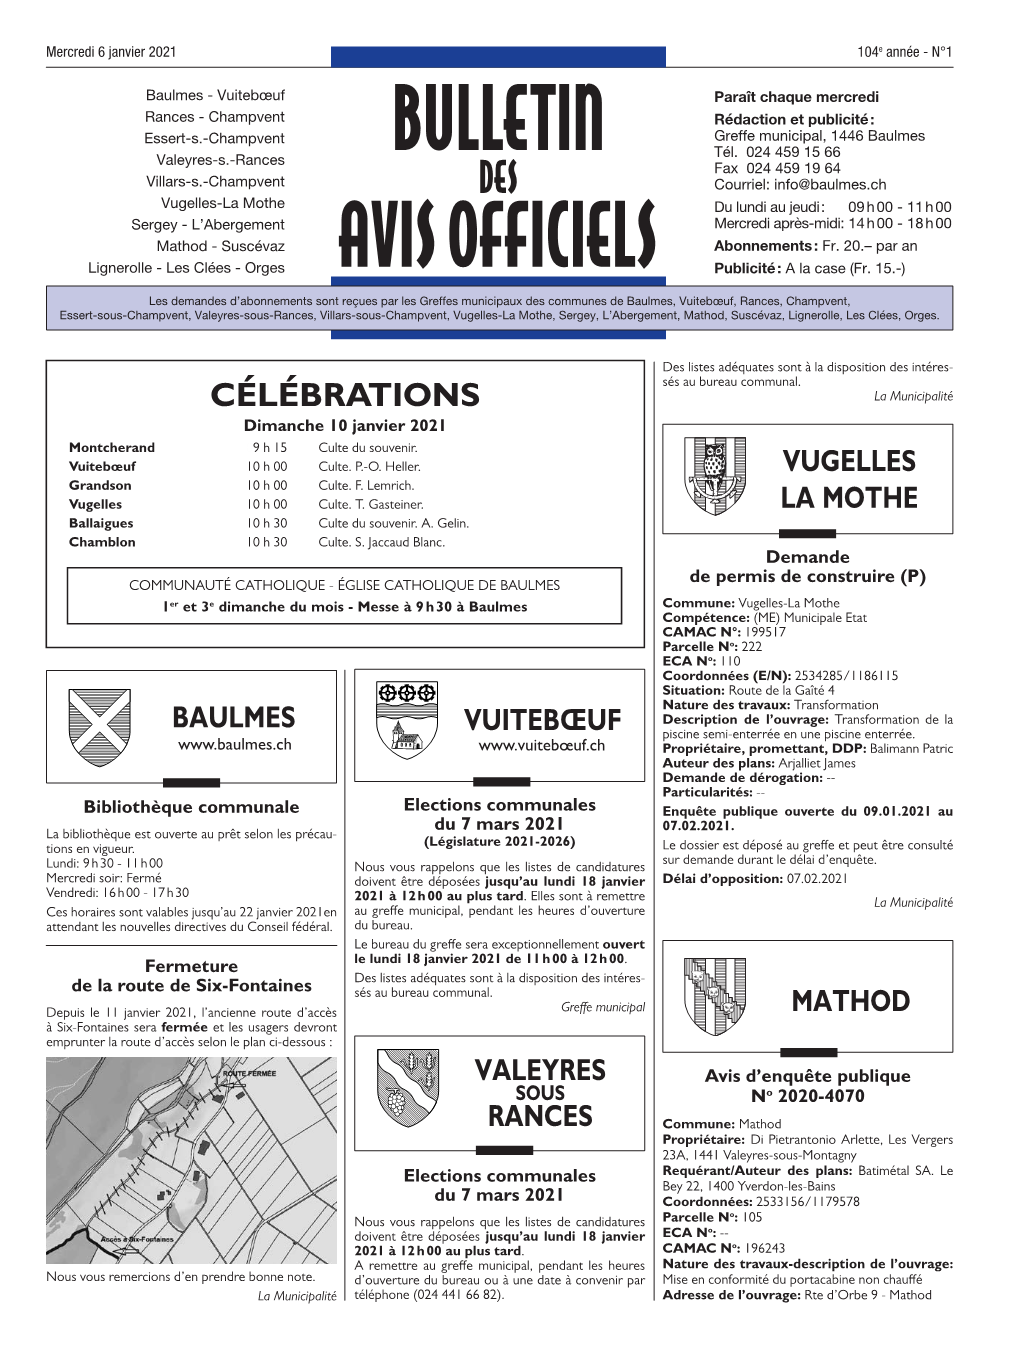 Orges AVIS OFFICIELS Publicité : a La Case (Fr